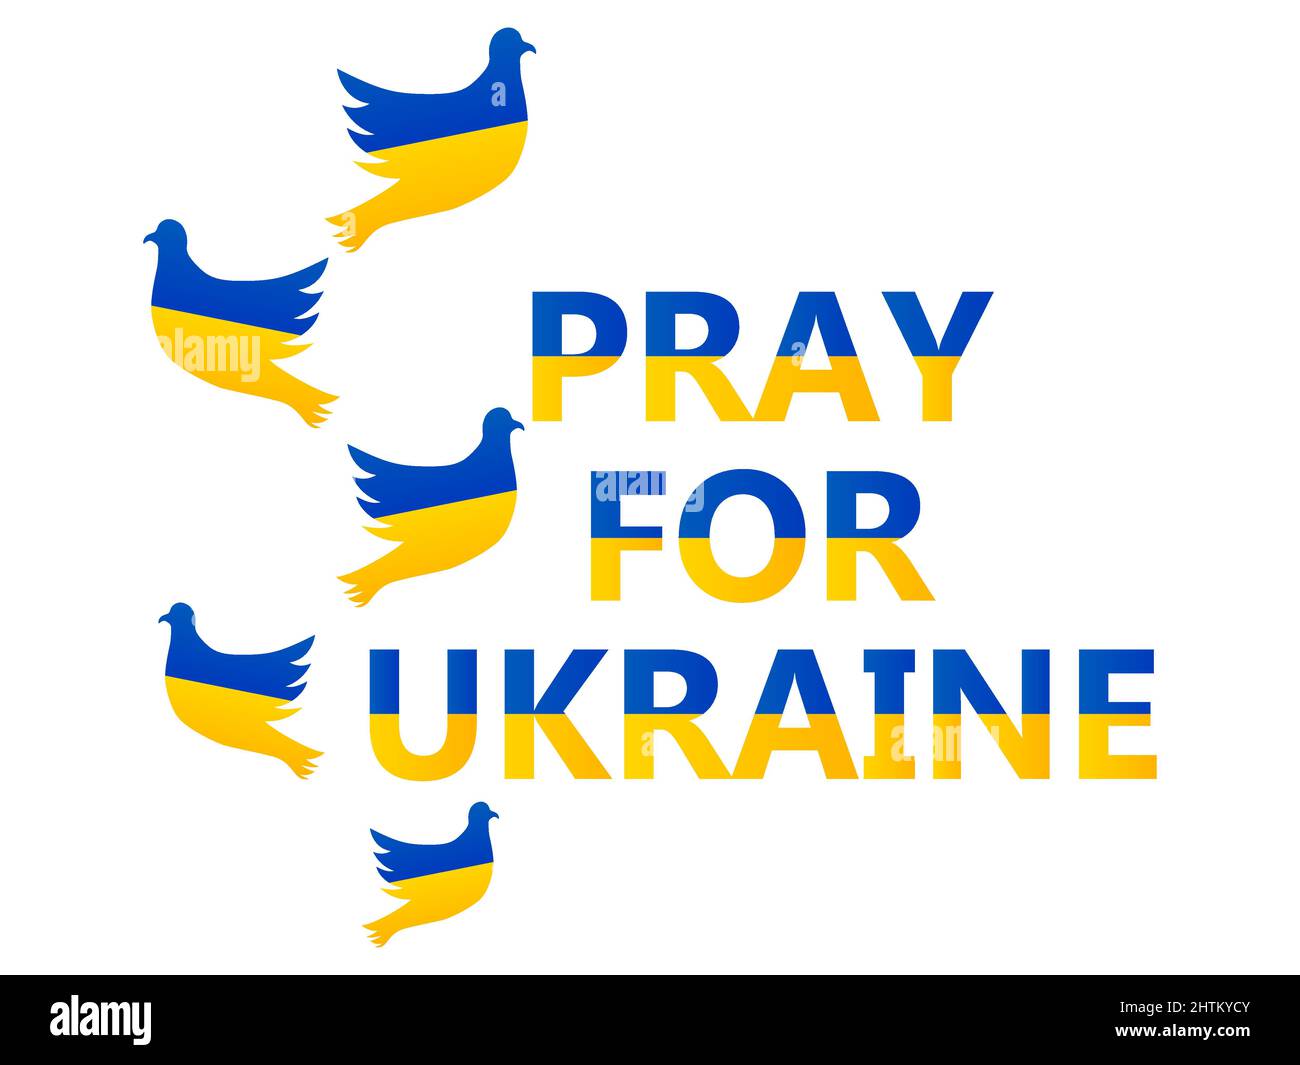 Priez pour l'Ukraine. Arrêter la guerre. Pigeons et texte avec drapeau ukrainien isolé sur fond blanc. Colombes de la paix. Design pour affiches et bannières contre Illustration de Vecteur